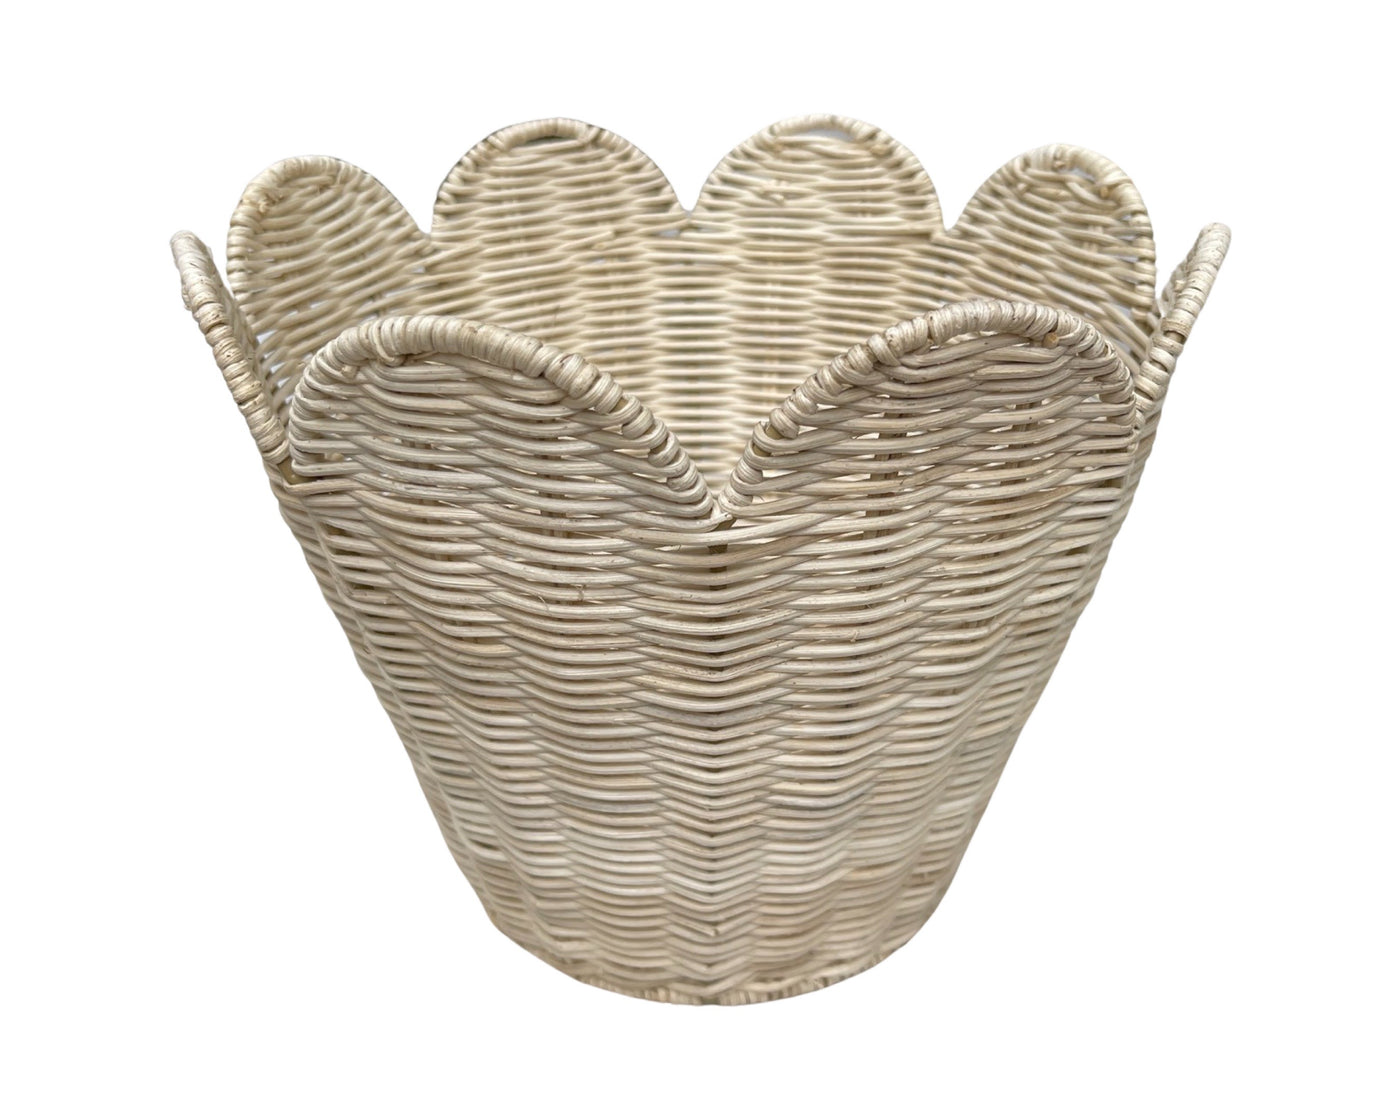 Scalloped Basket - Natural